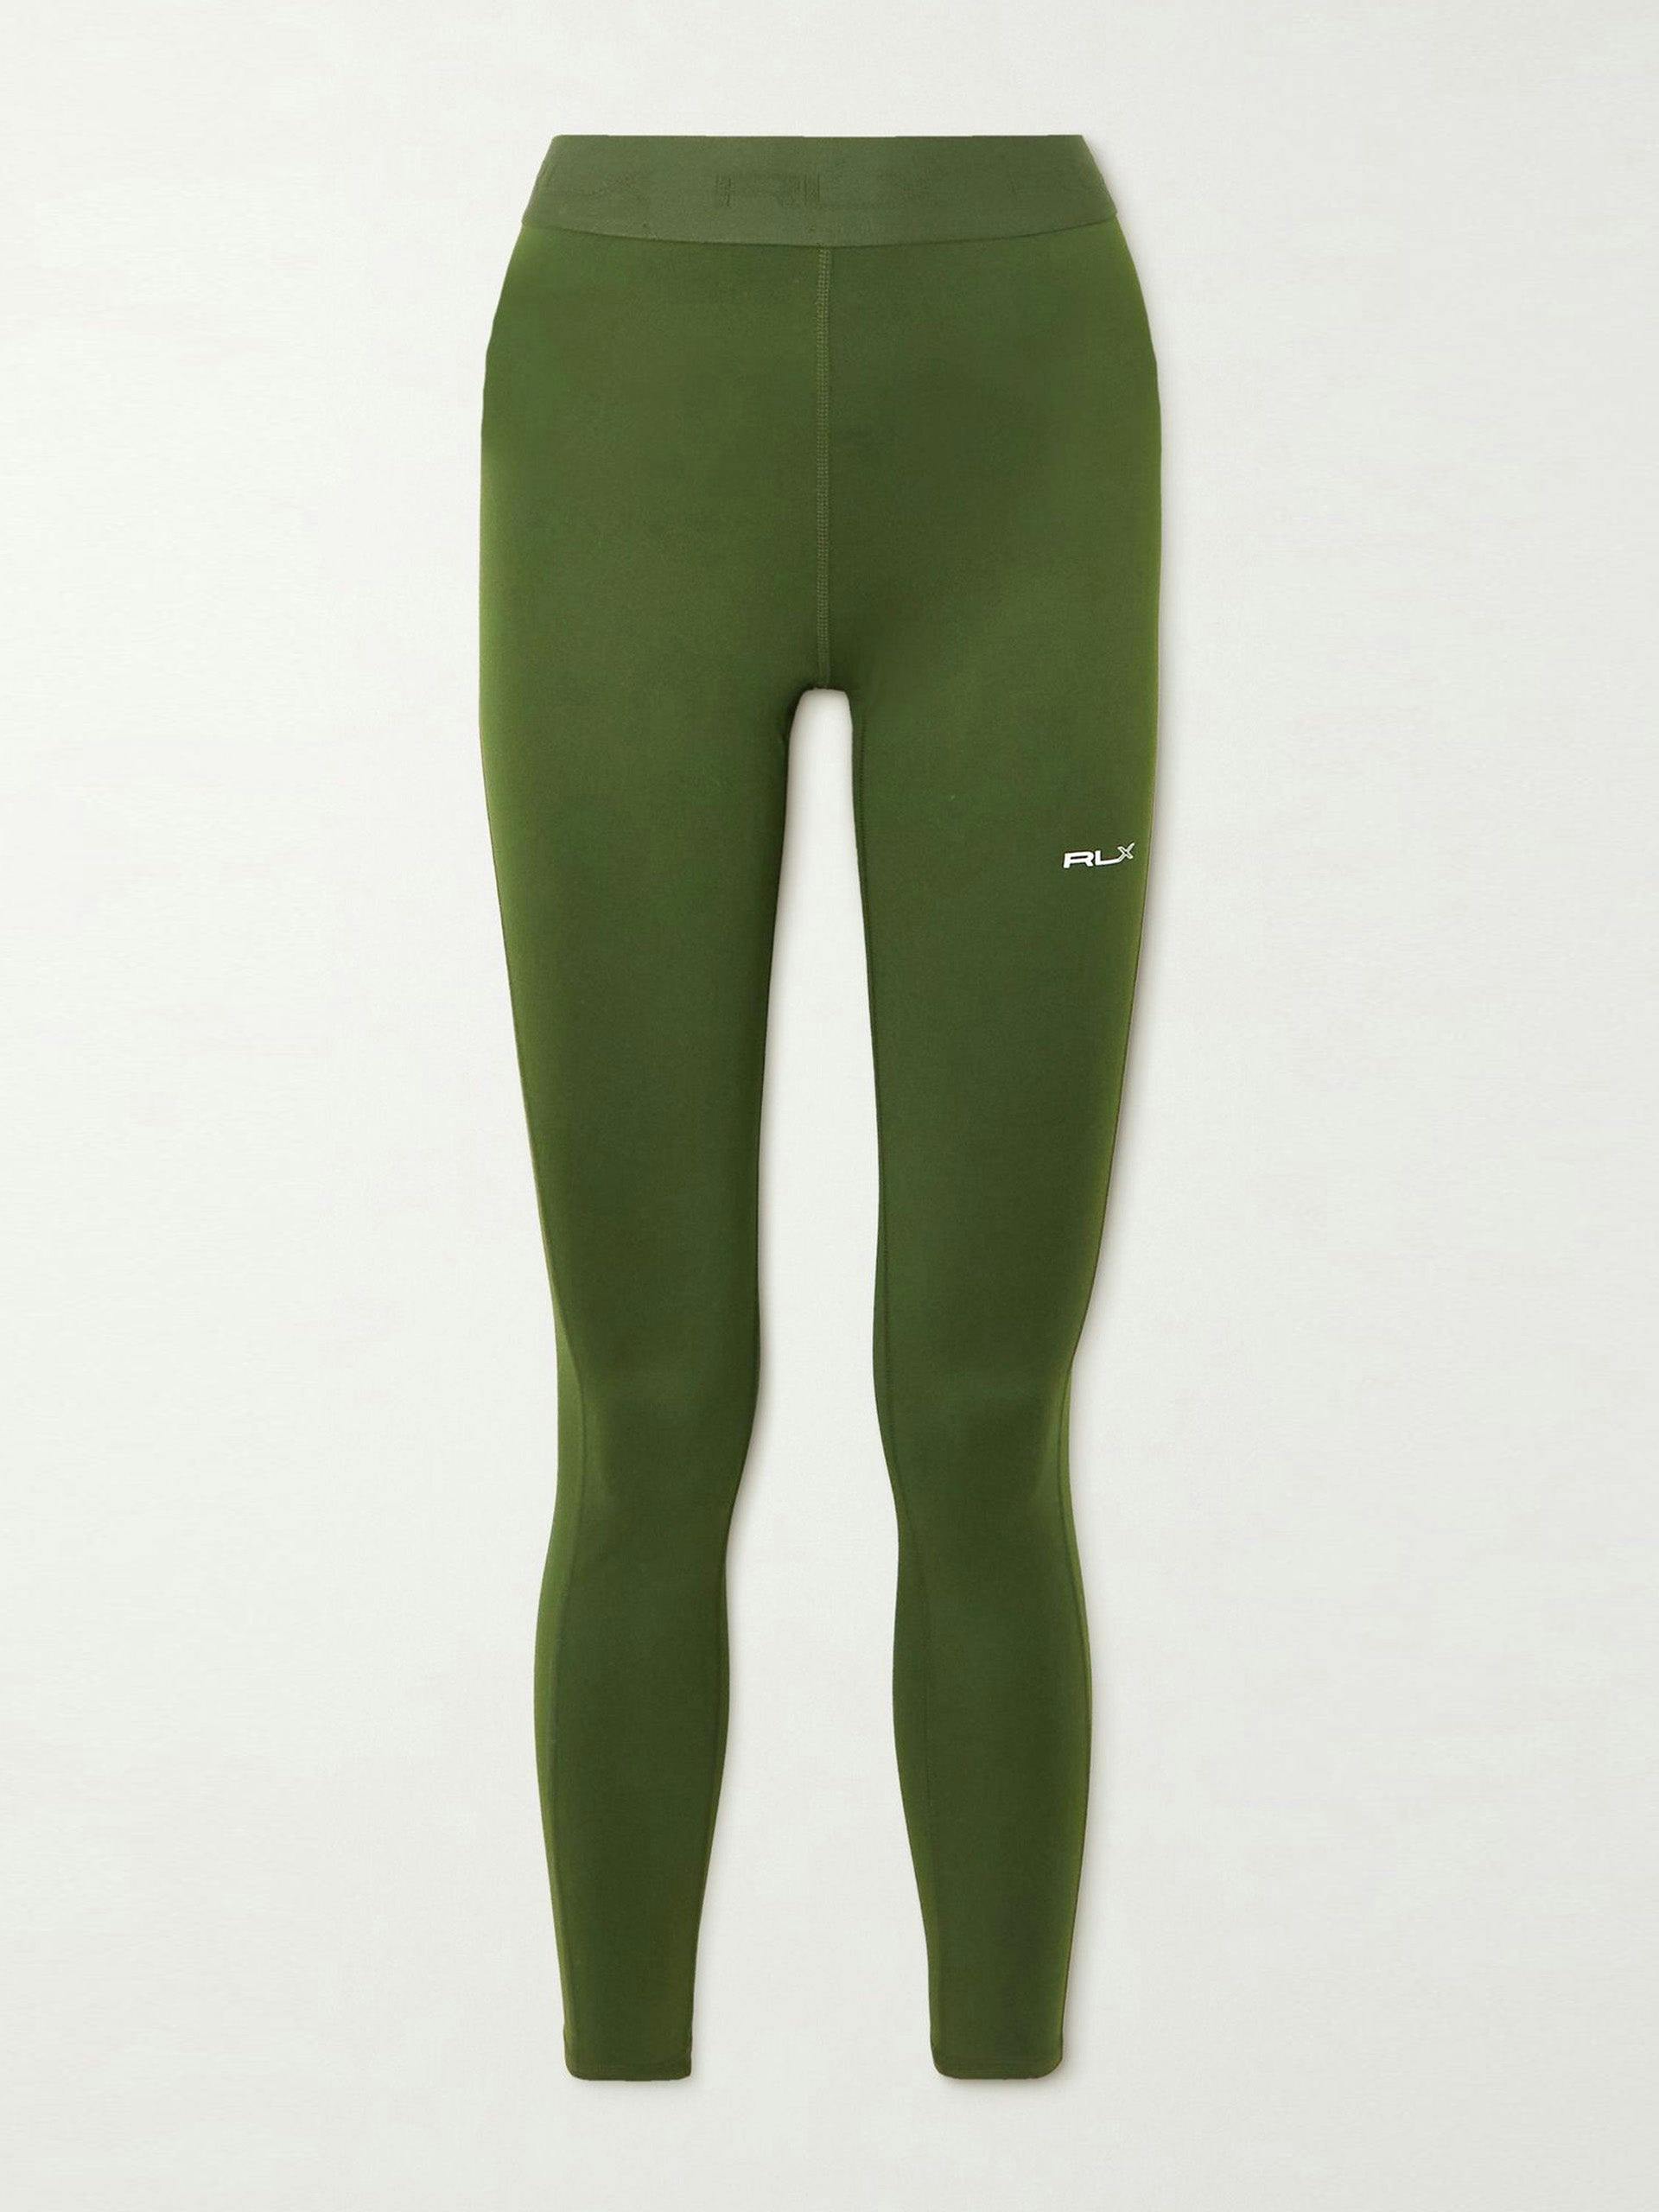 Army Green stretch leggings